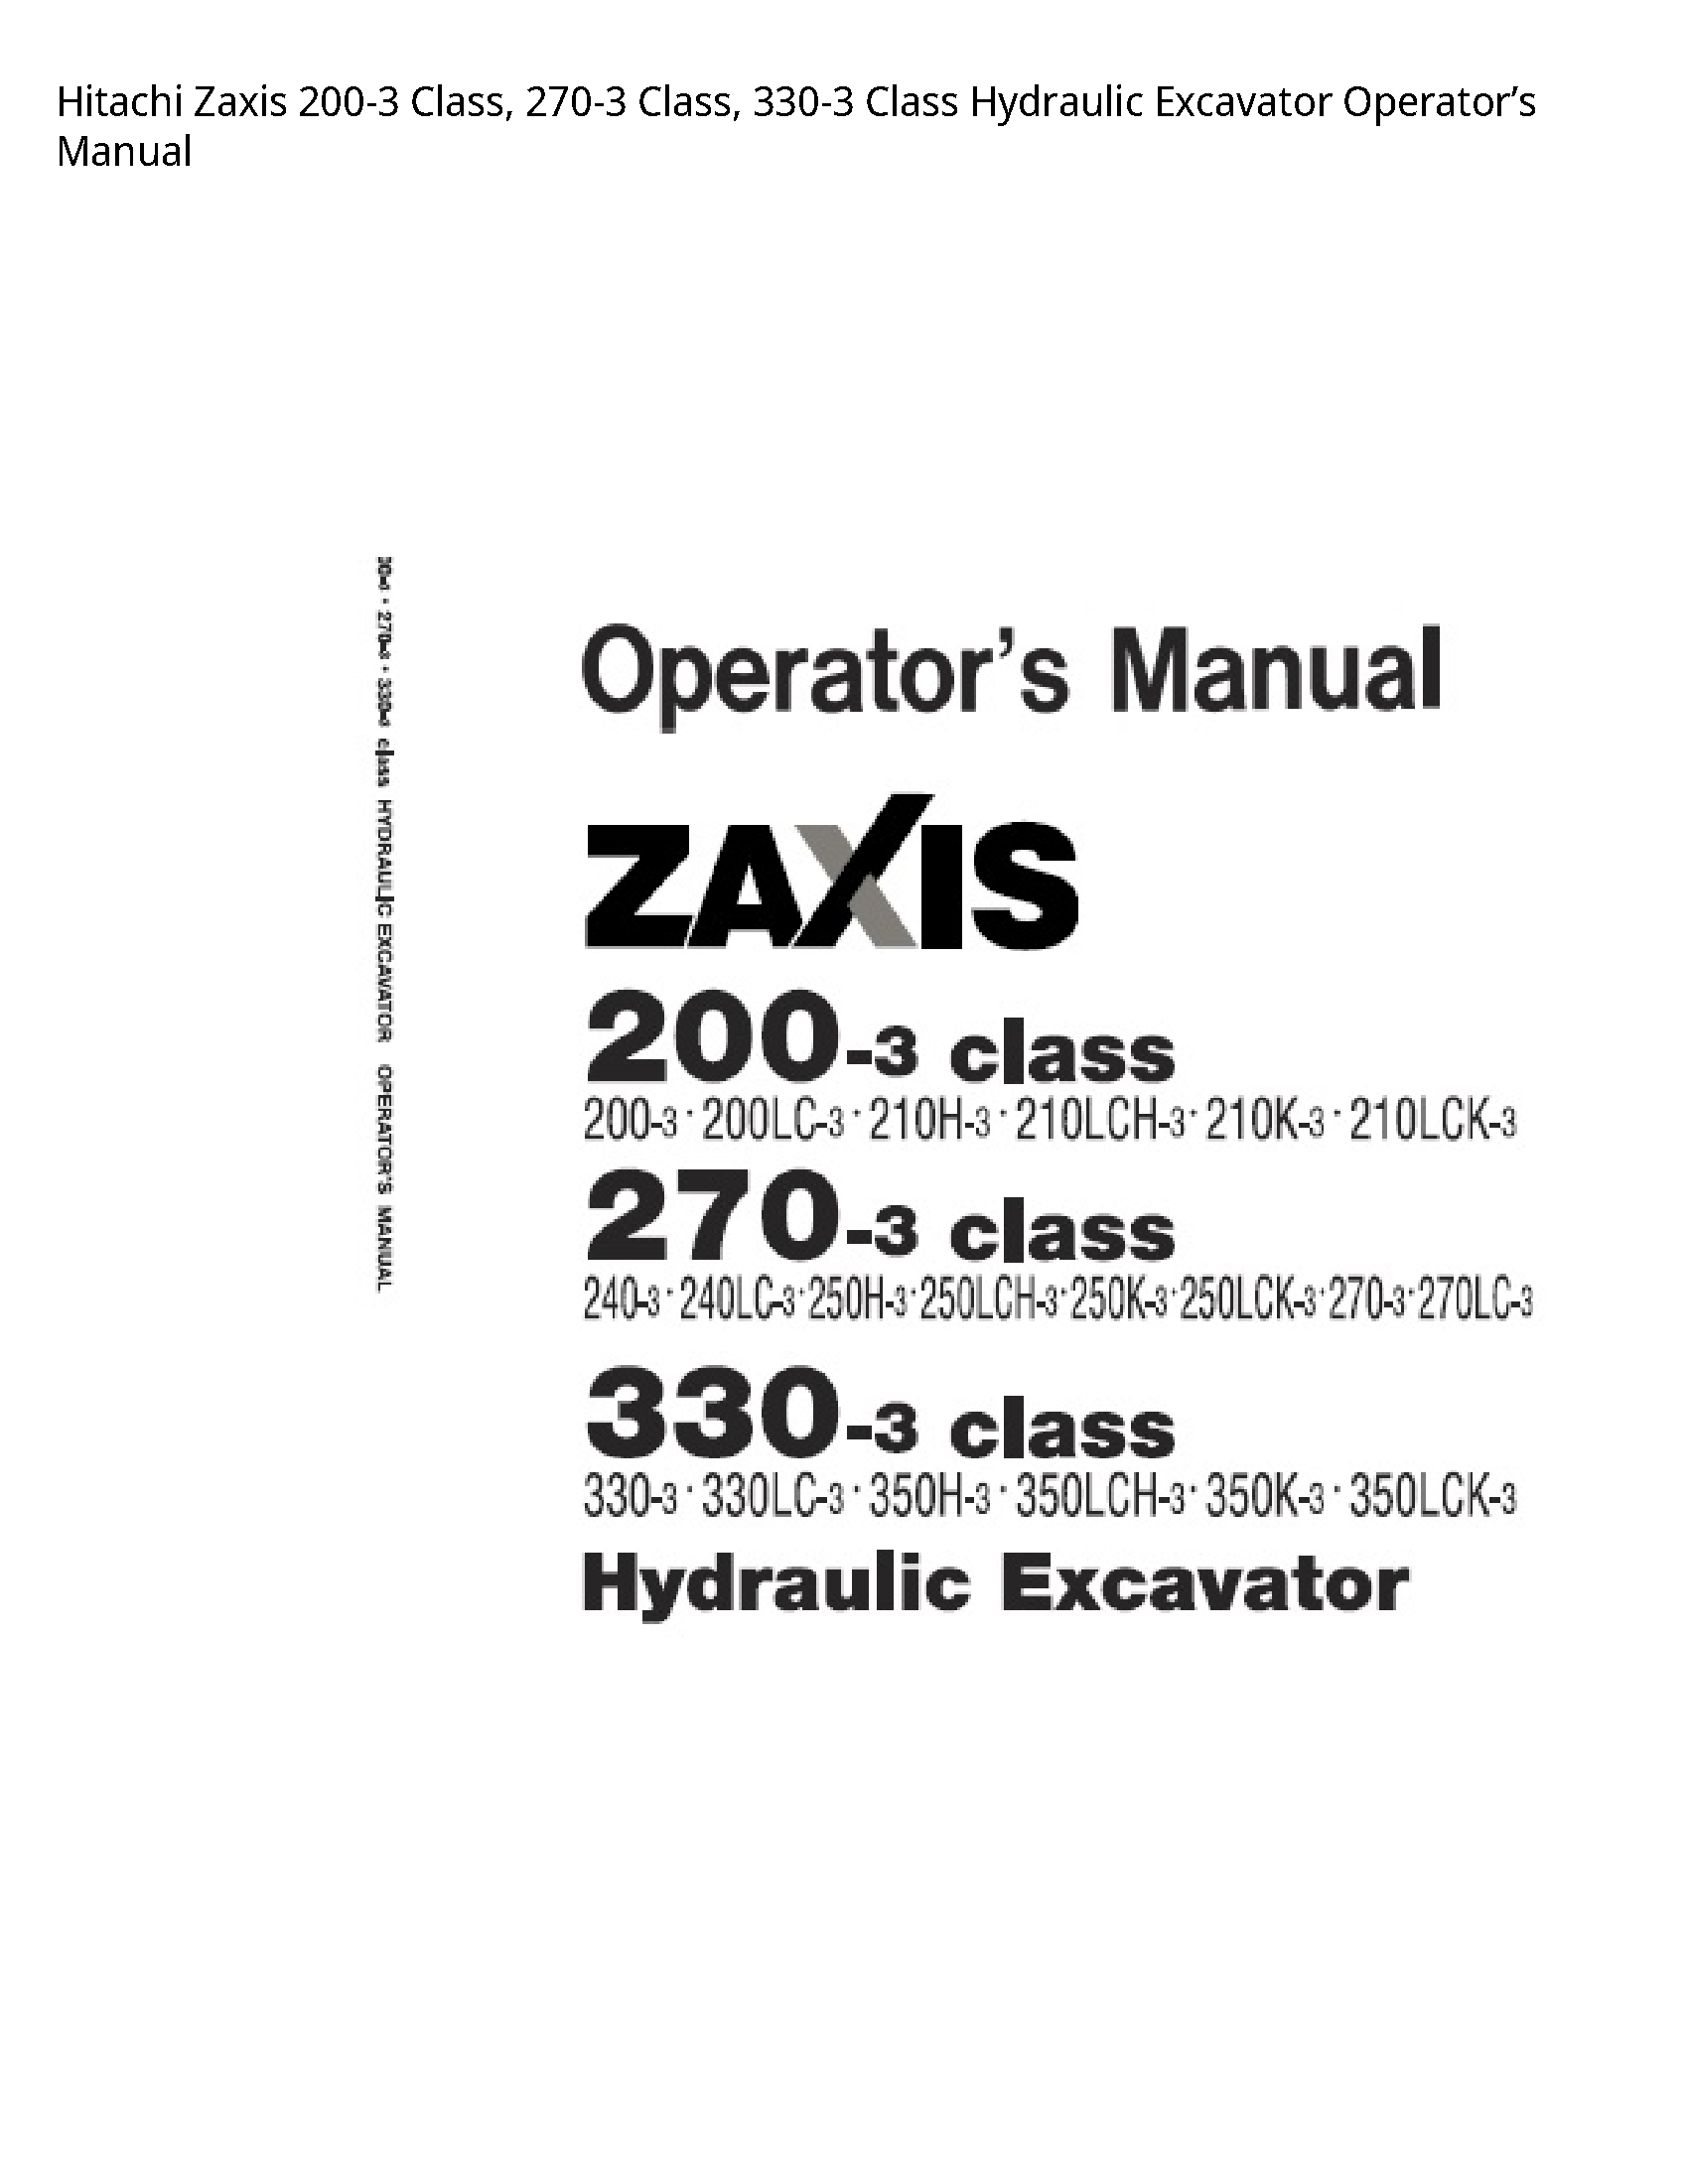 Hitachi 200-3 Zaxis Class manual